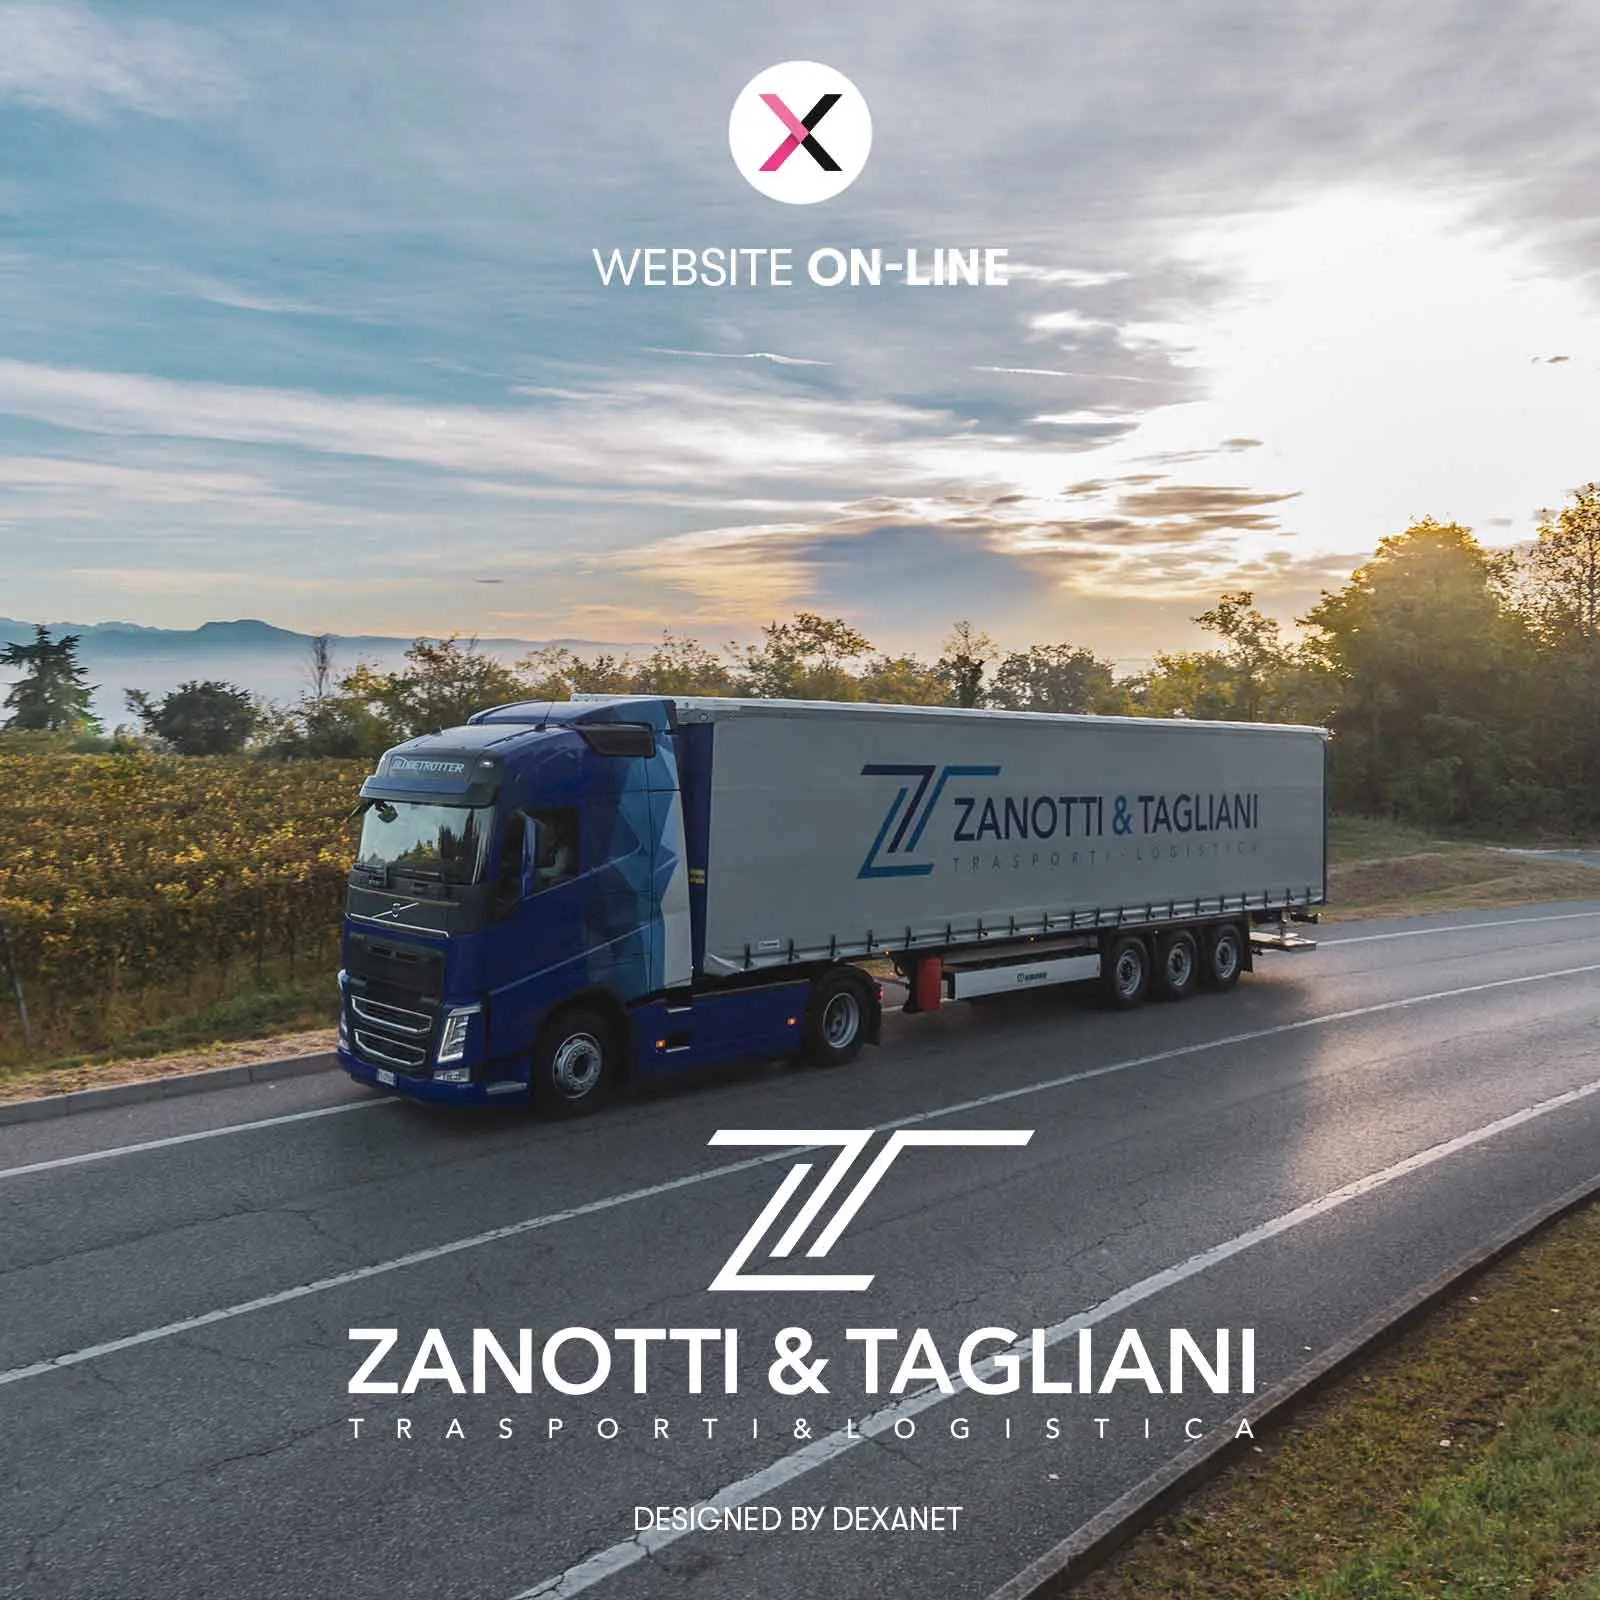 Zanotti & Tagliani lascia il segno con i suoi servizi di trasporto e logistica. E con un nuovo sito web.